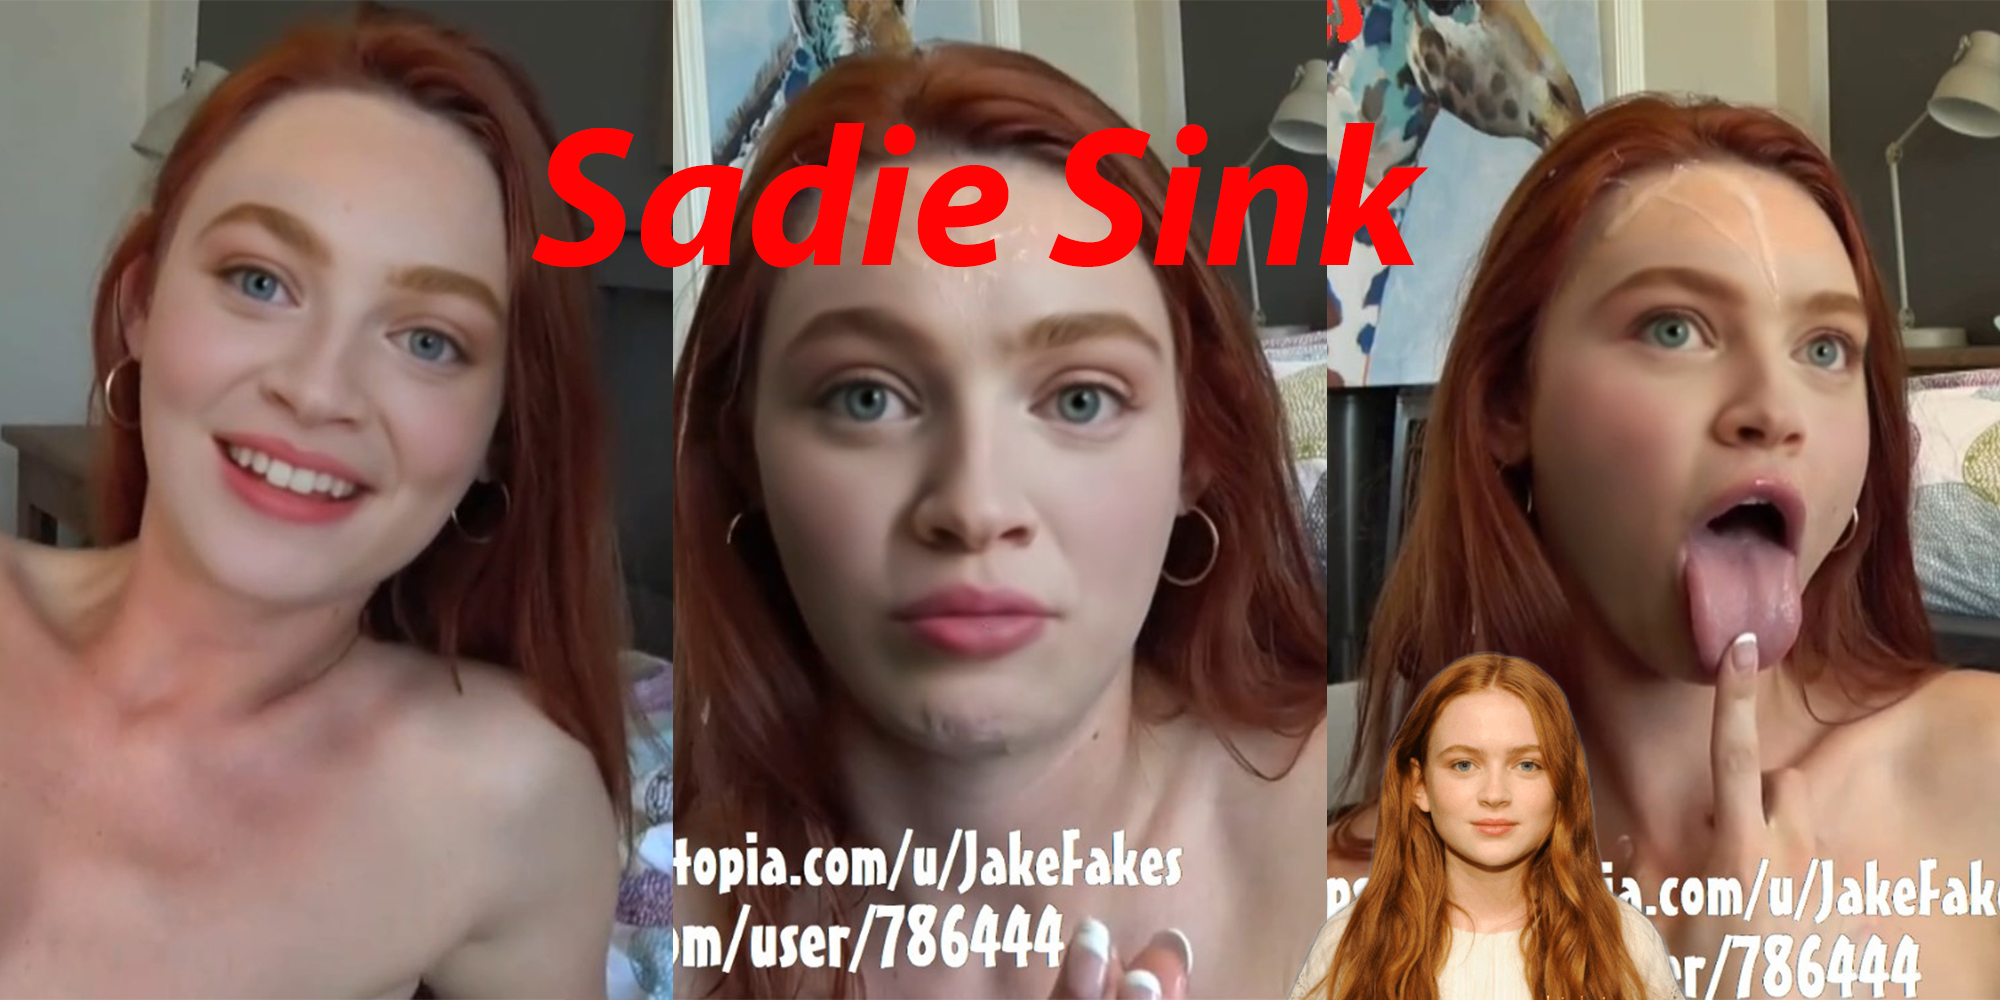 Sadie Sink let's talk and fuck